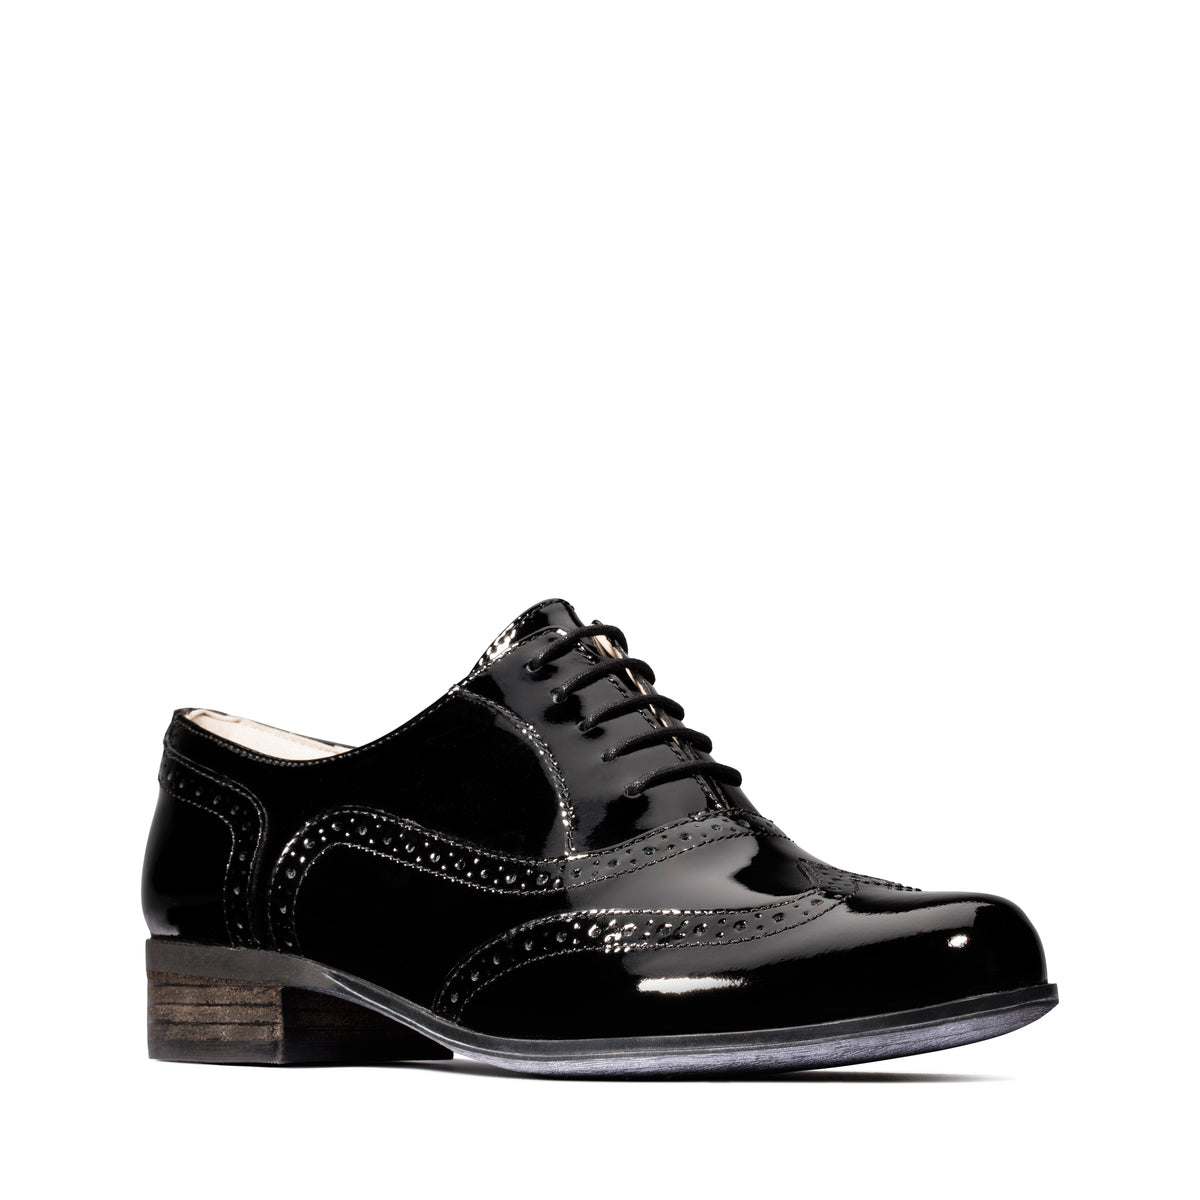 Zapatos Oxford De La Marca Clarks Para Mujer Modelo Hamble Oak Black Pat En Color Negro